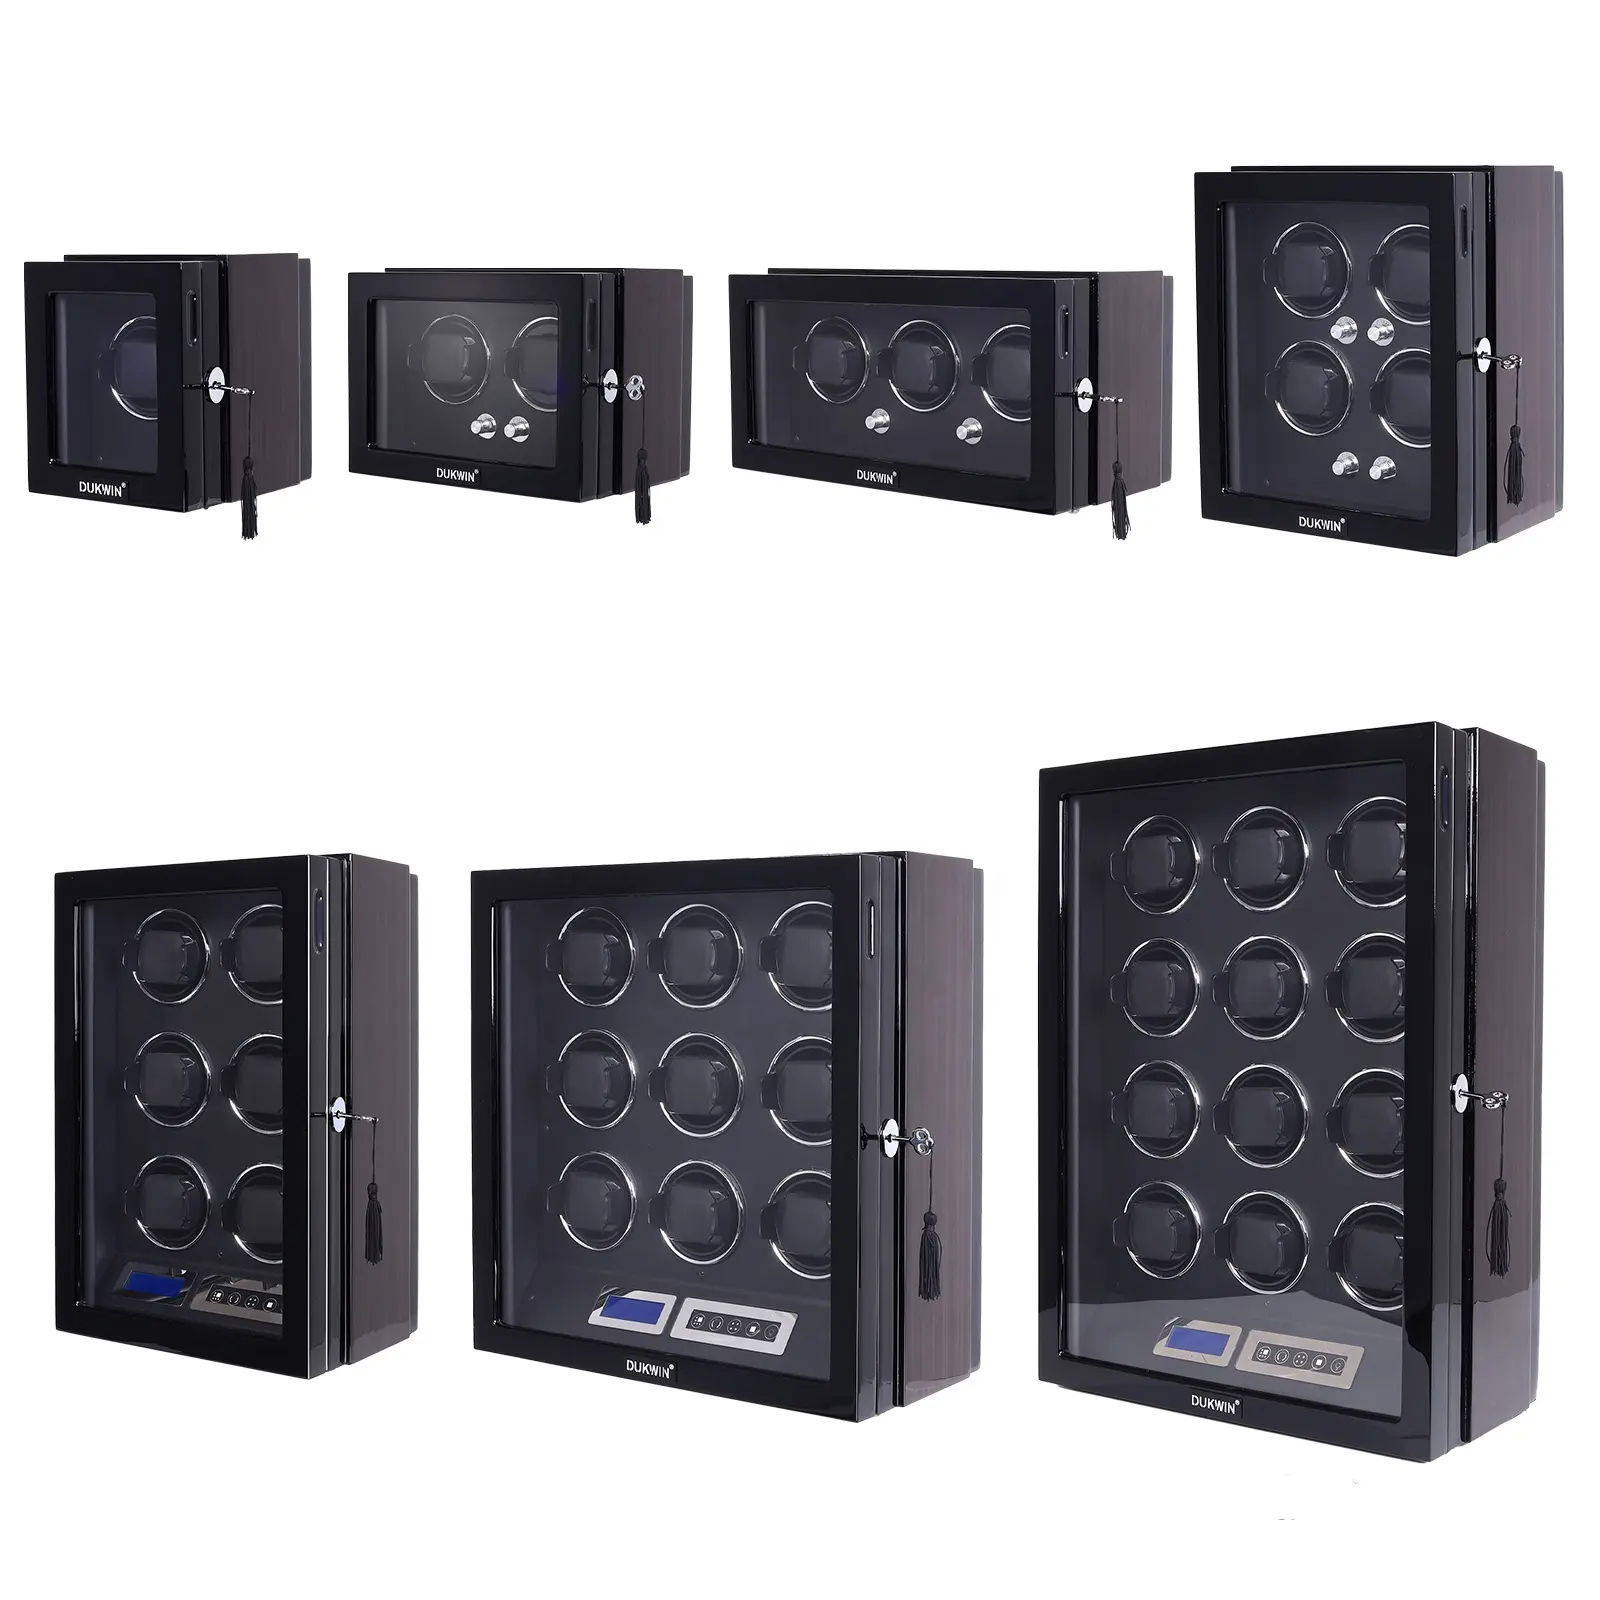 Caja de bobinador de reloj de madera con pantalla táctil Led, reloj de lujo personalizado con 1, 2, 3, 4, 6, 9, 12 ranuras, LCD, Control remoto, caja de seguridad automática